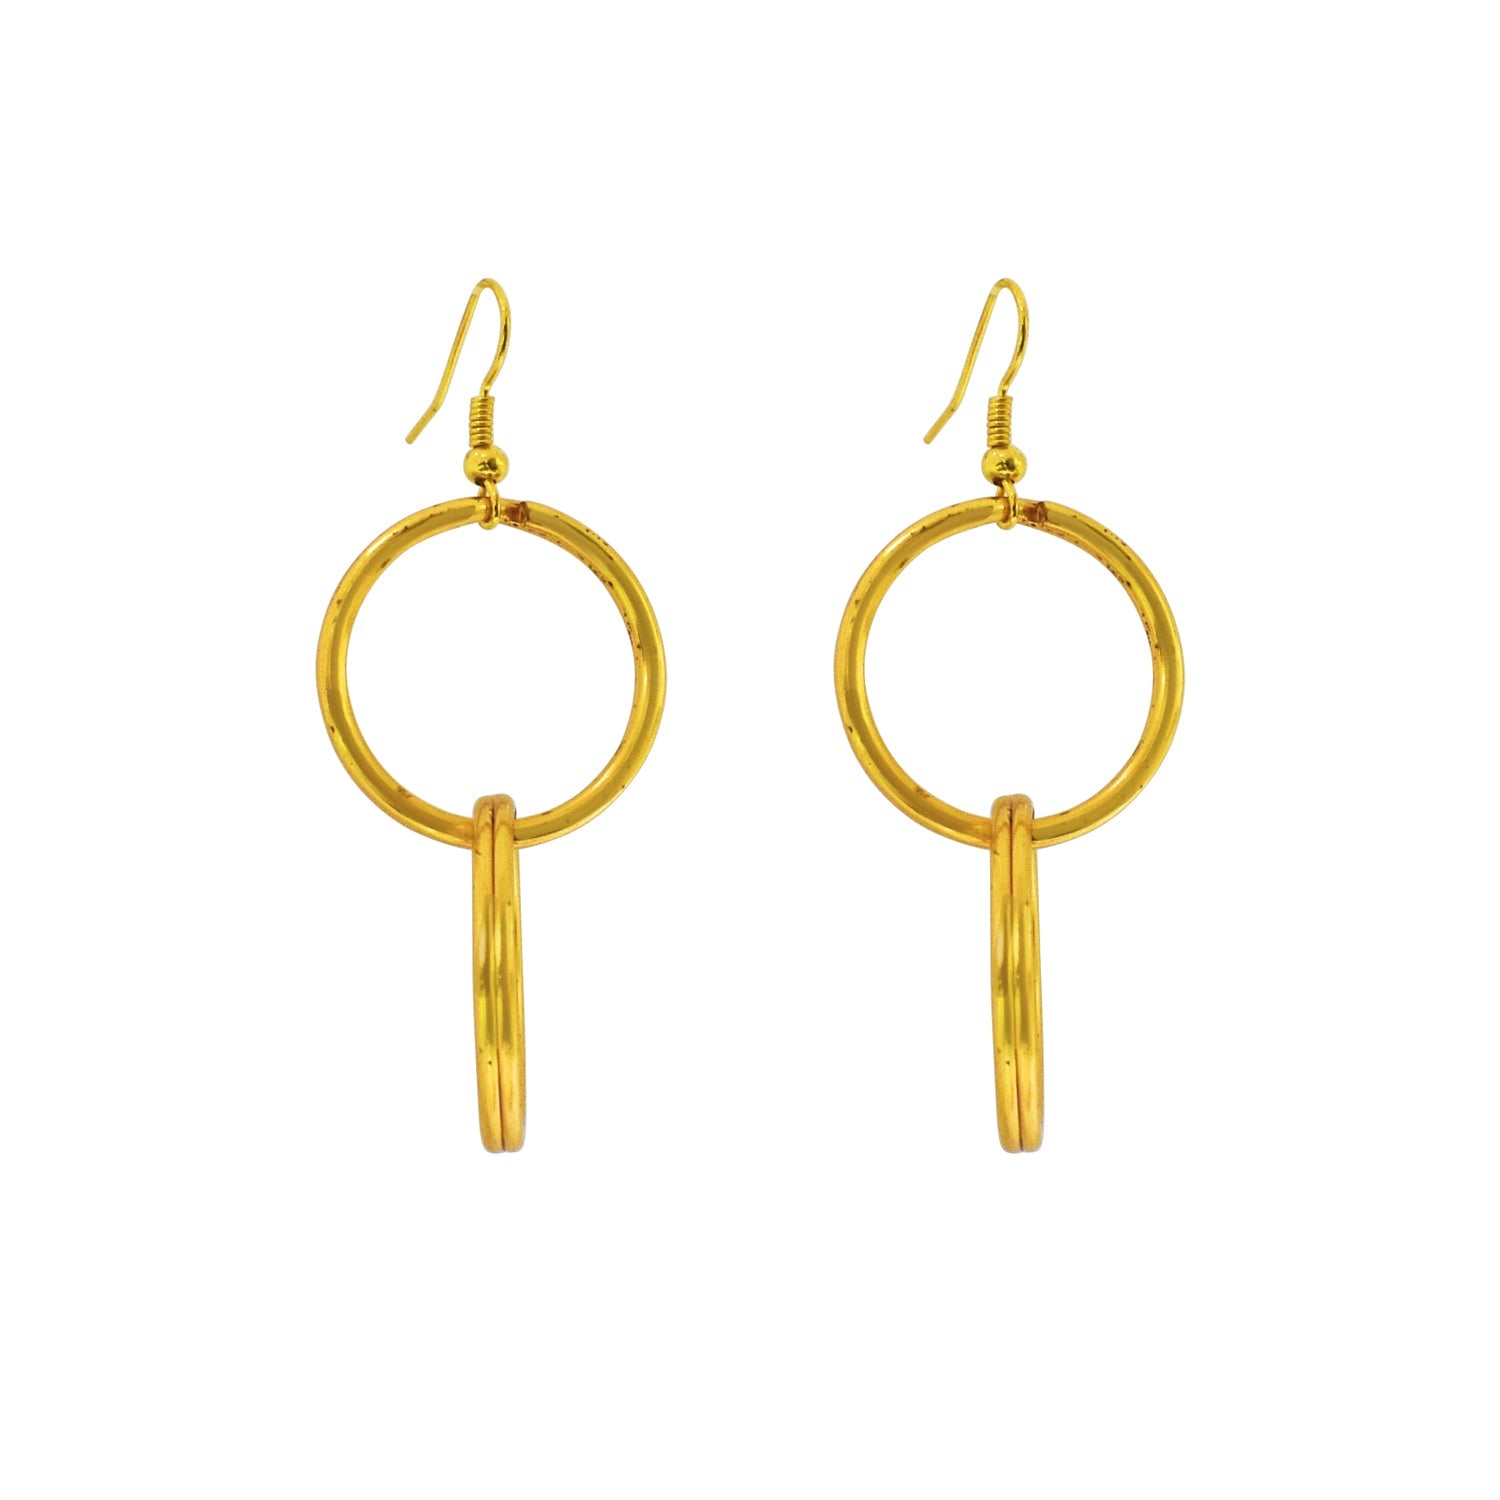 Minimalist Double Loop Earrings, Contemporary Geometric Jewelry | by lovedbynlanla-4